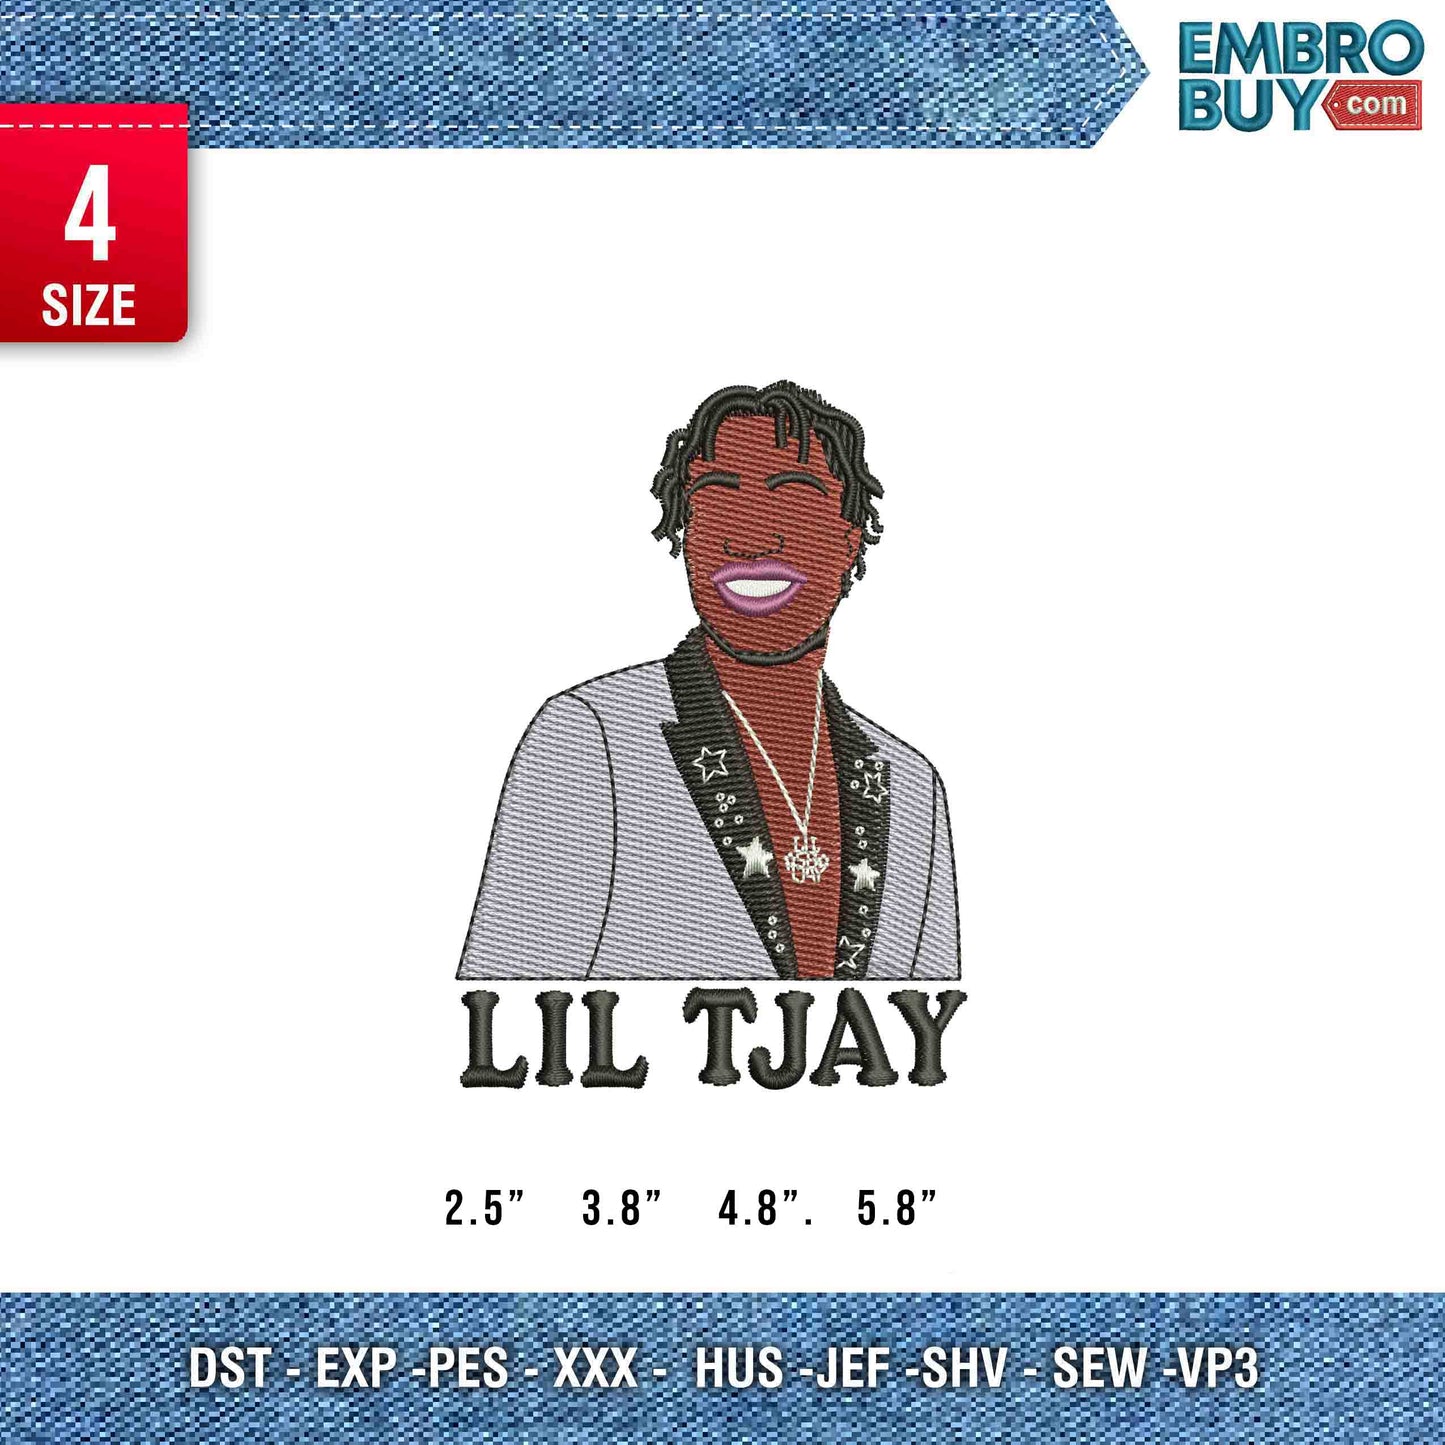 Lil Tjay